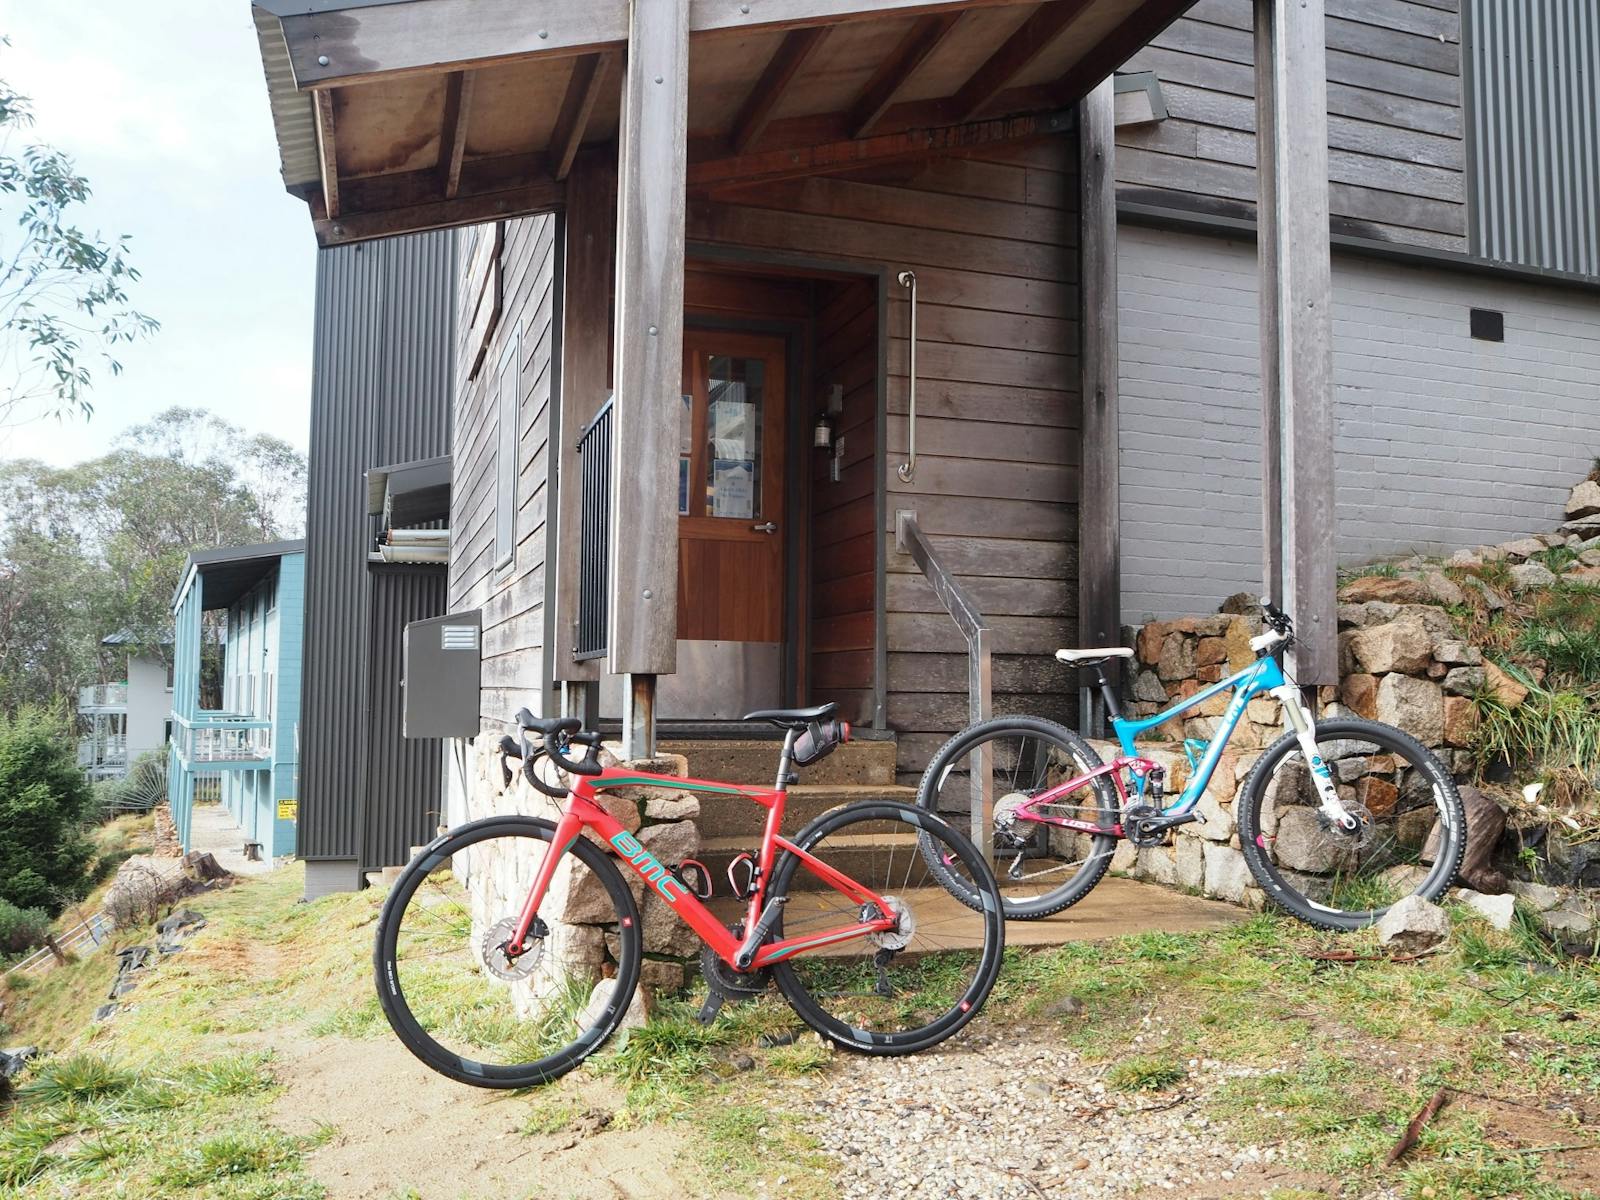 Bikes at the front door